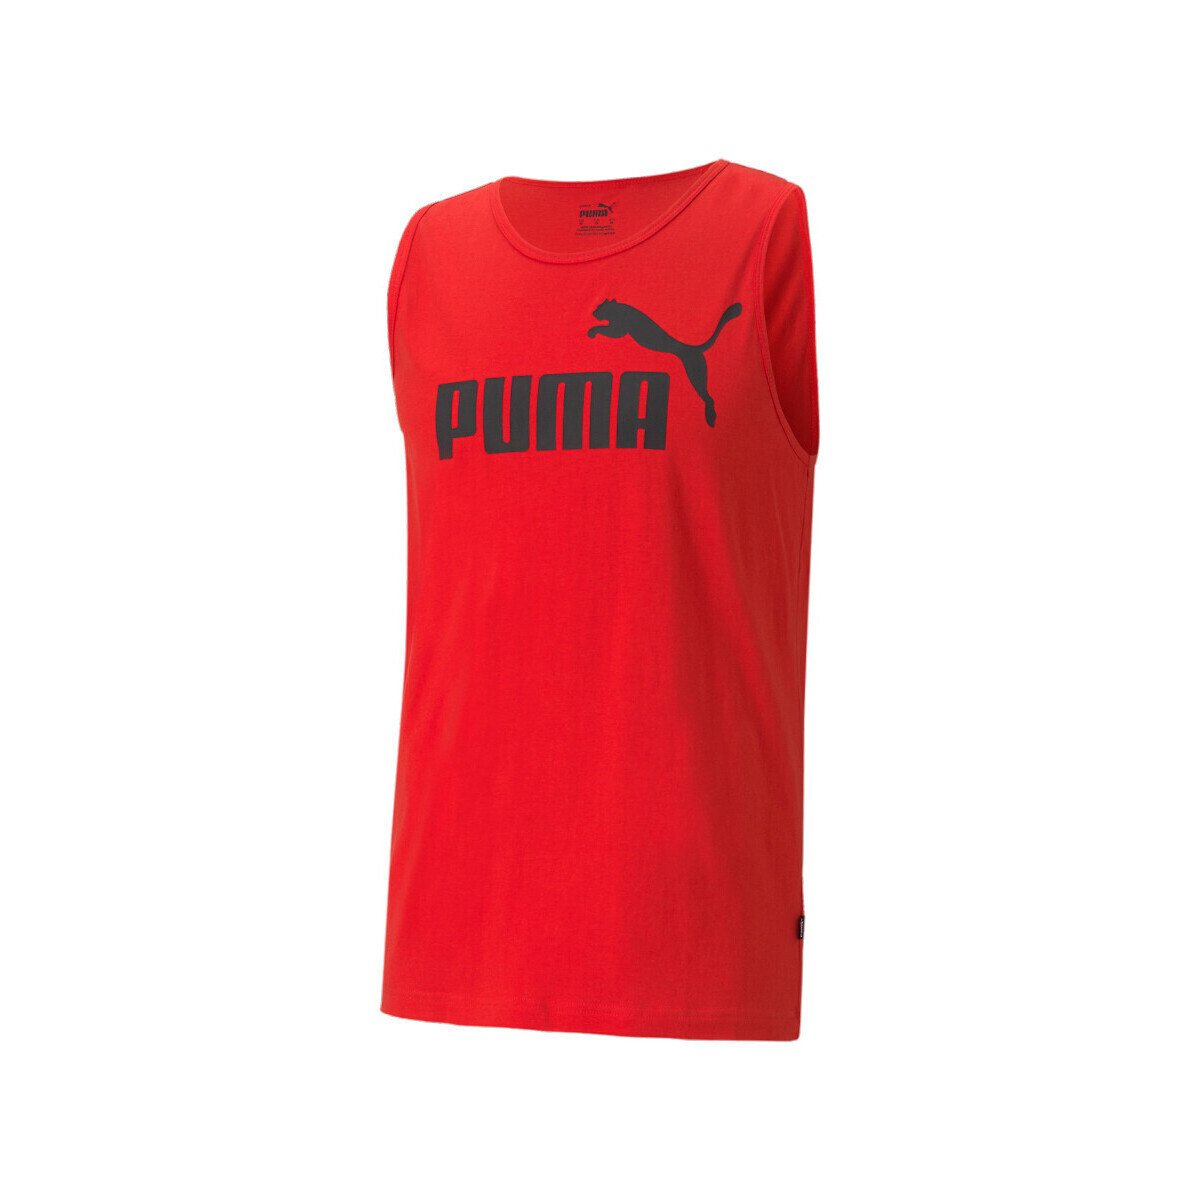 Abbigliamento Uomo Top / T-shirt senza maniche Puma 586670-11 Rosso